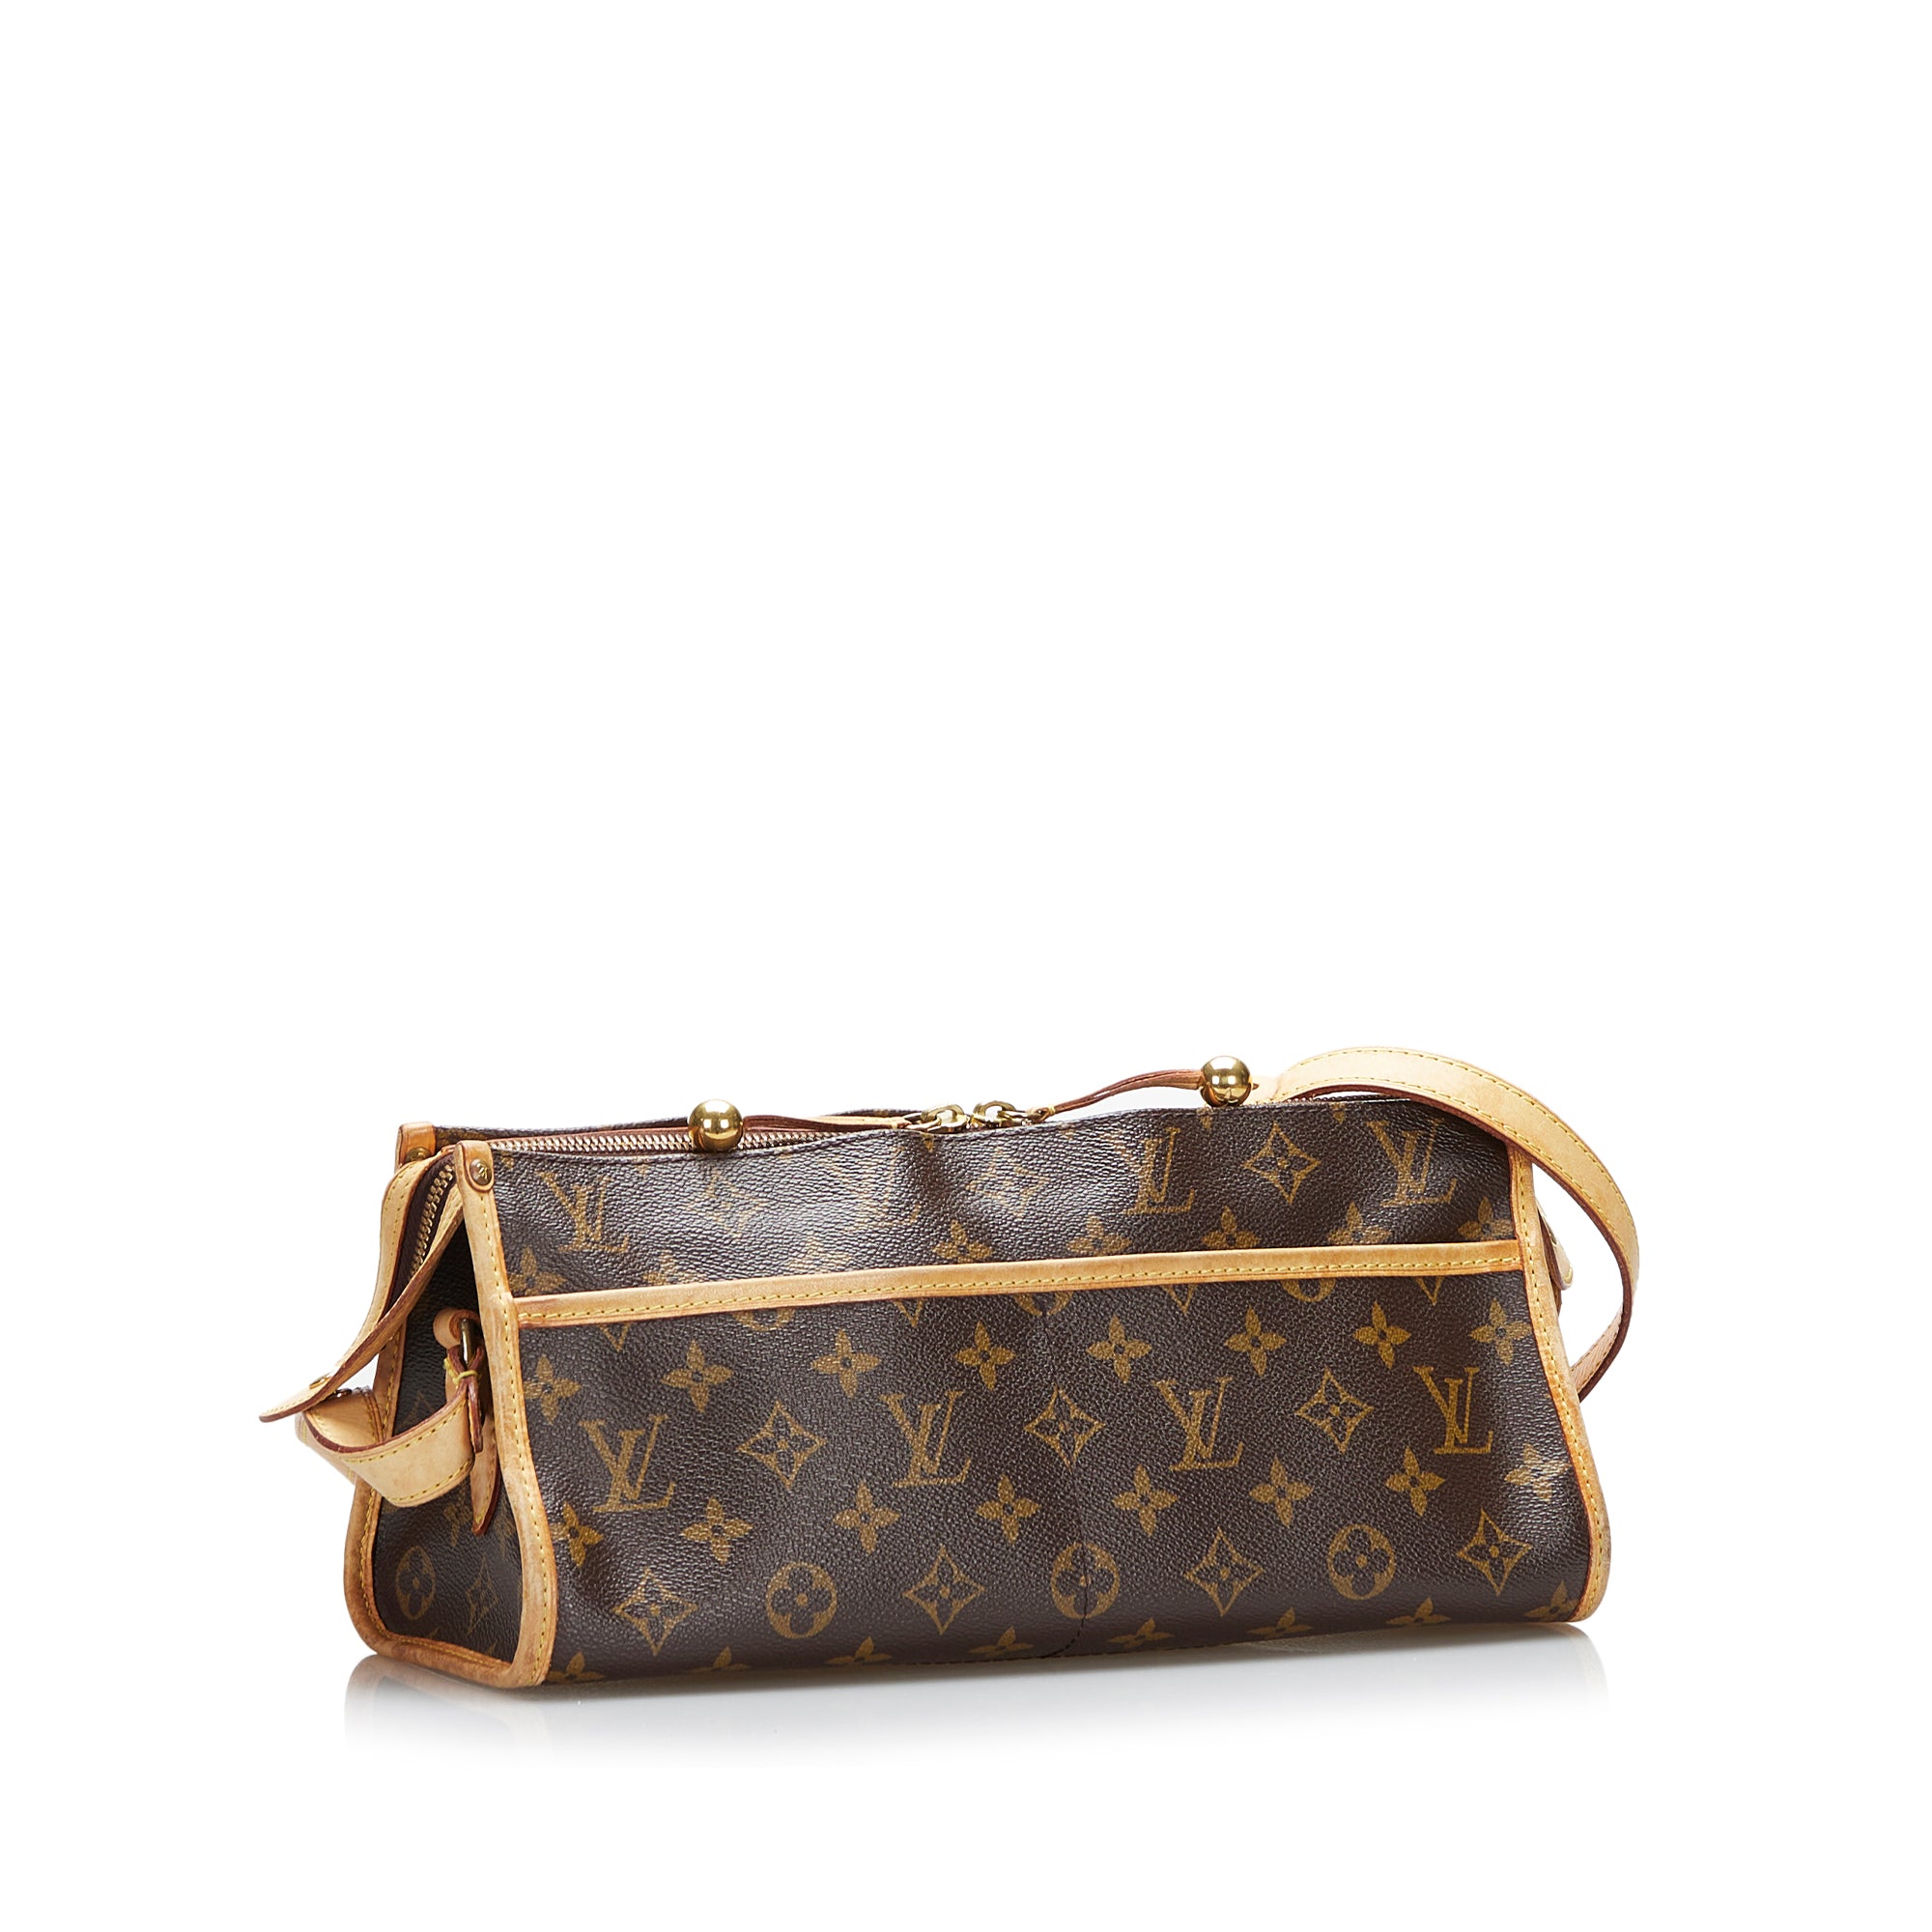 Authentic Louis Vuitton Monogram Popincourt Long Shoulder Bag Crossbody  Purse